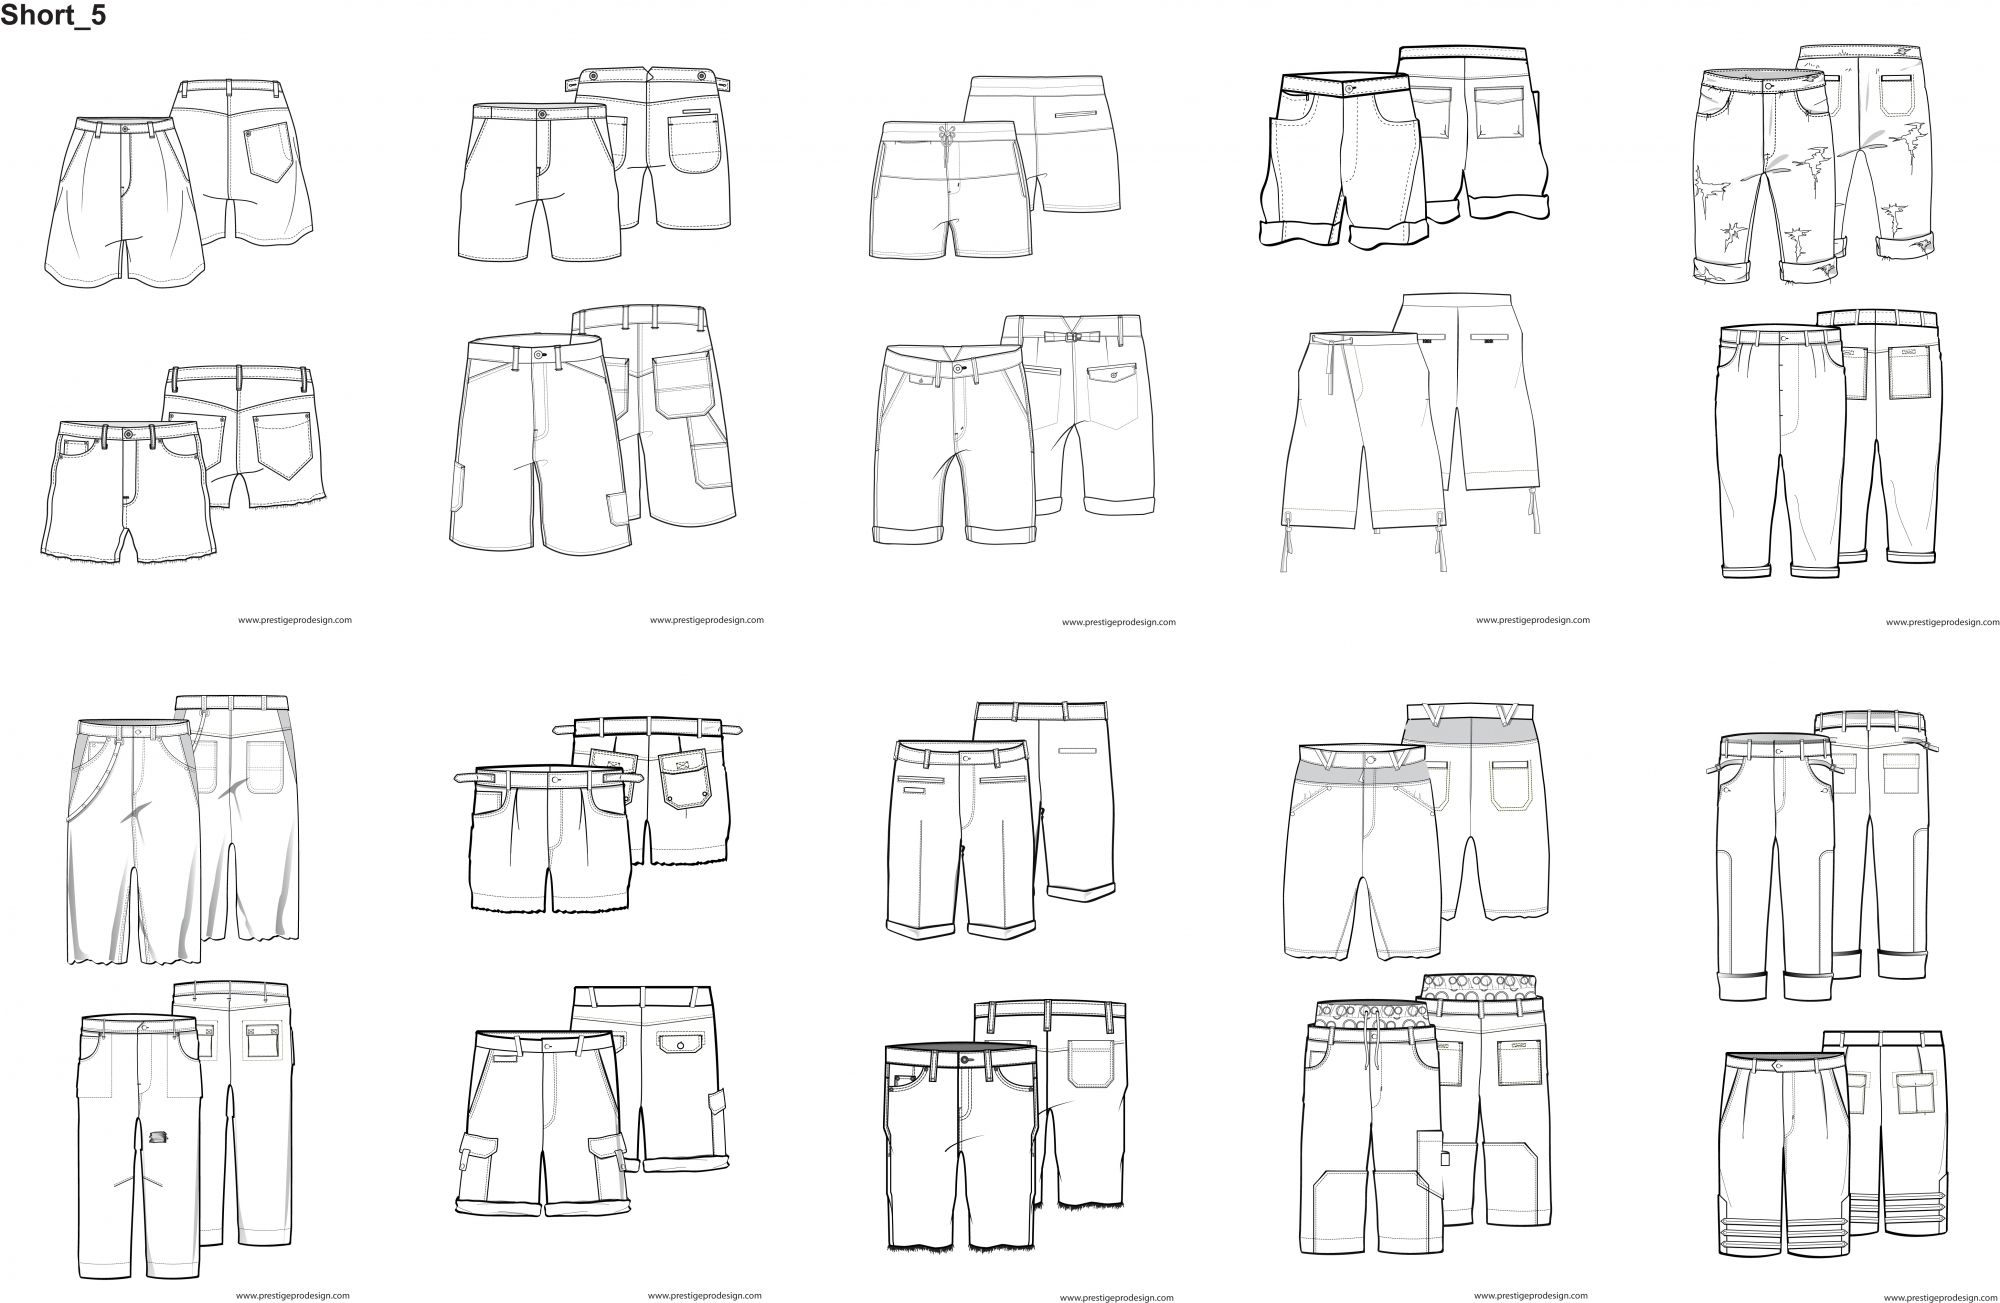 Как рисовать шорты мужские